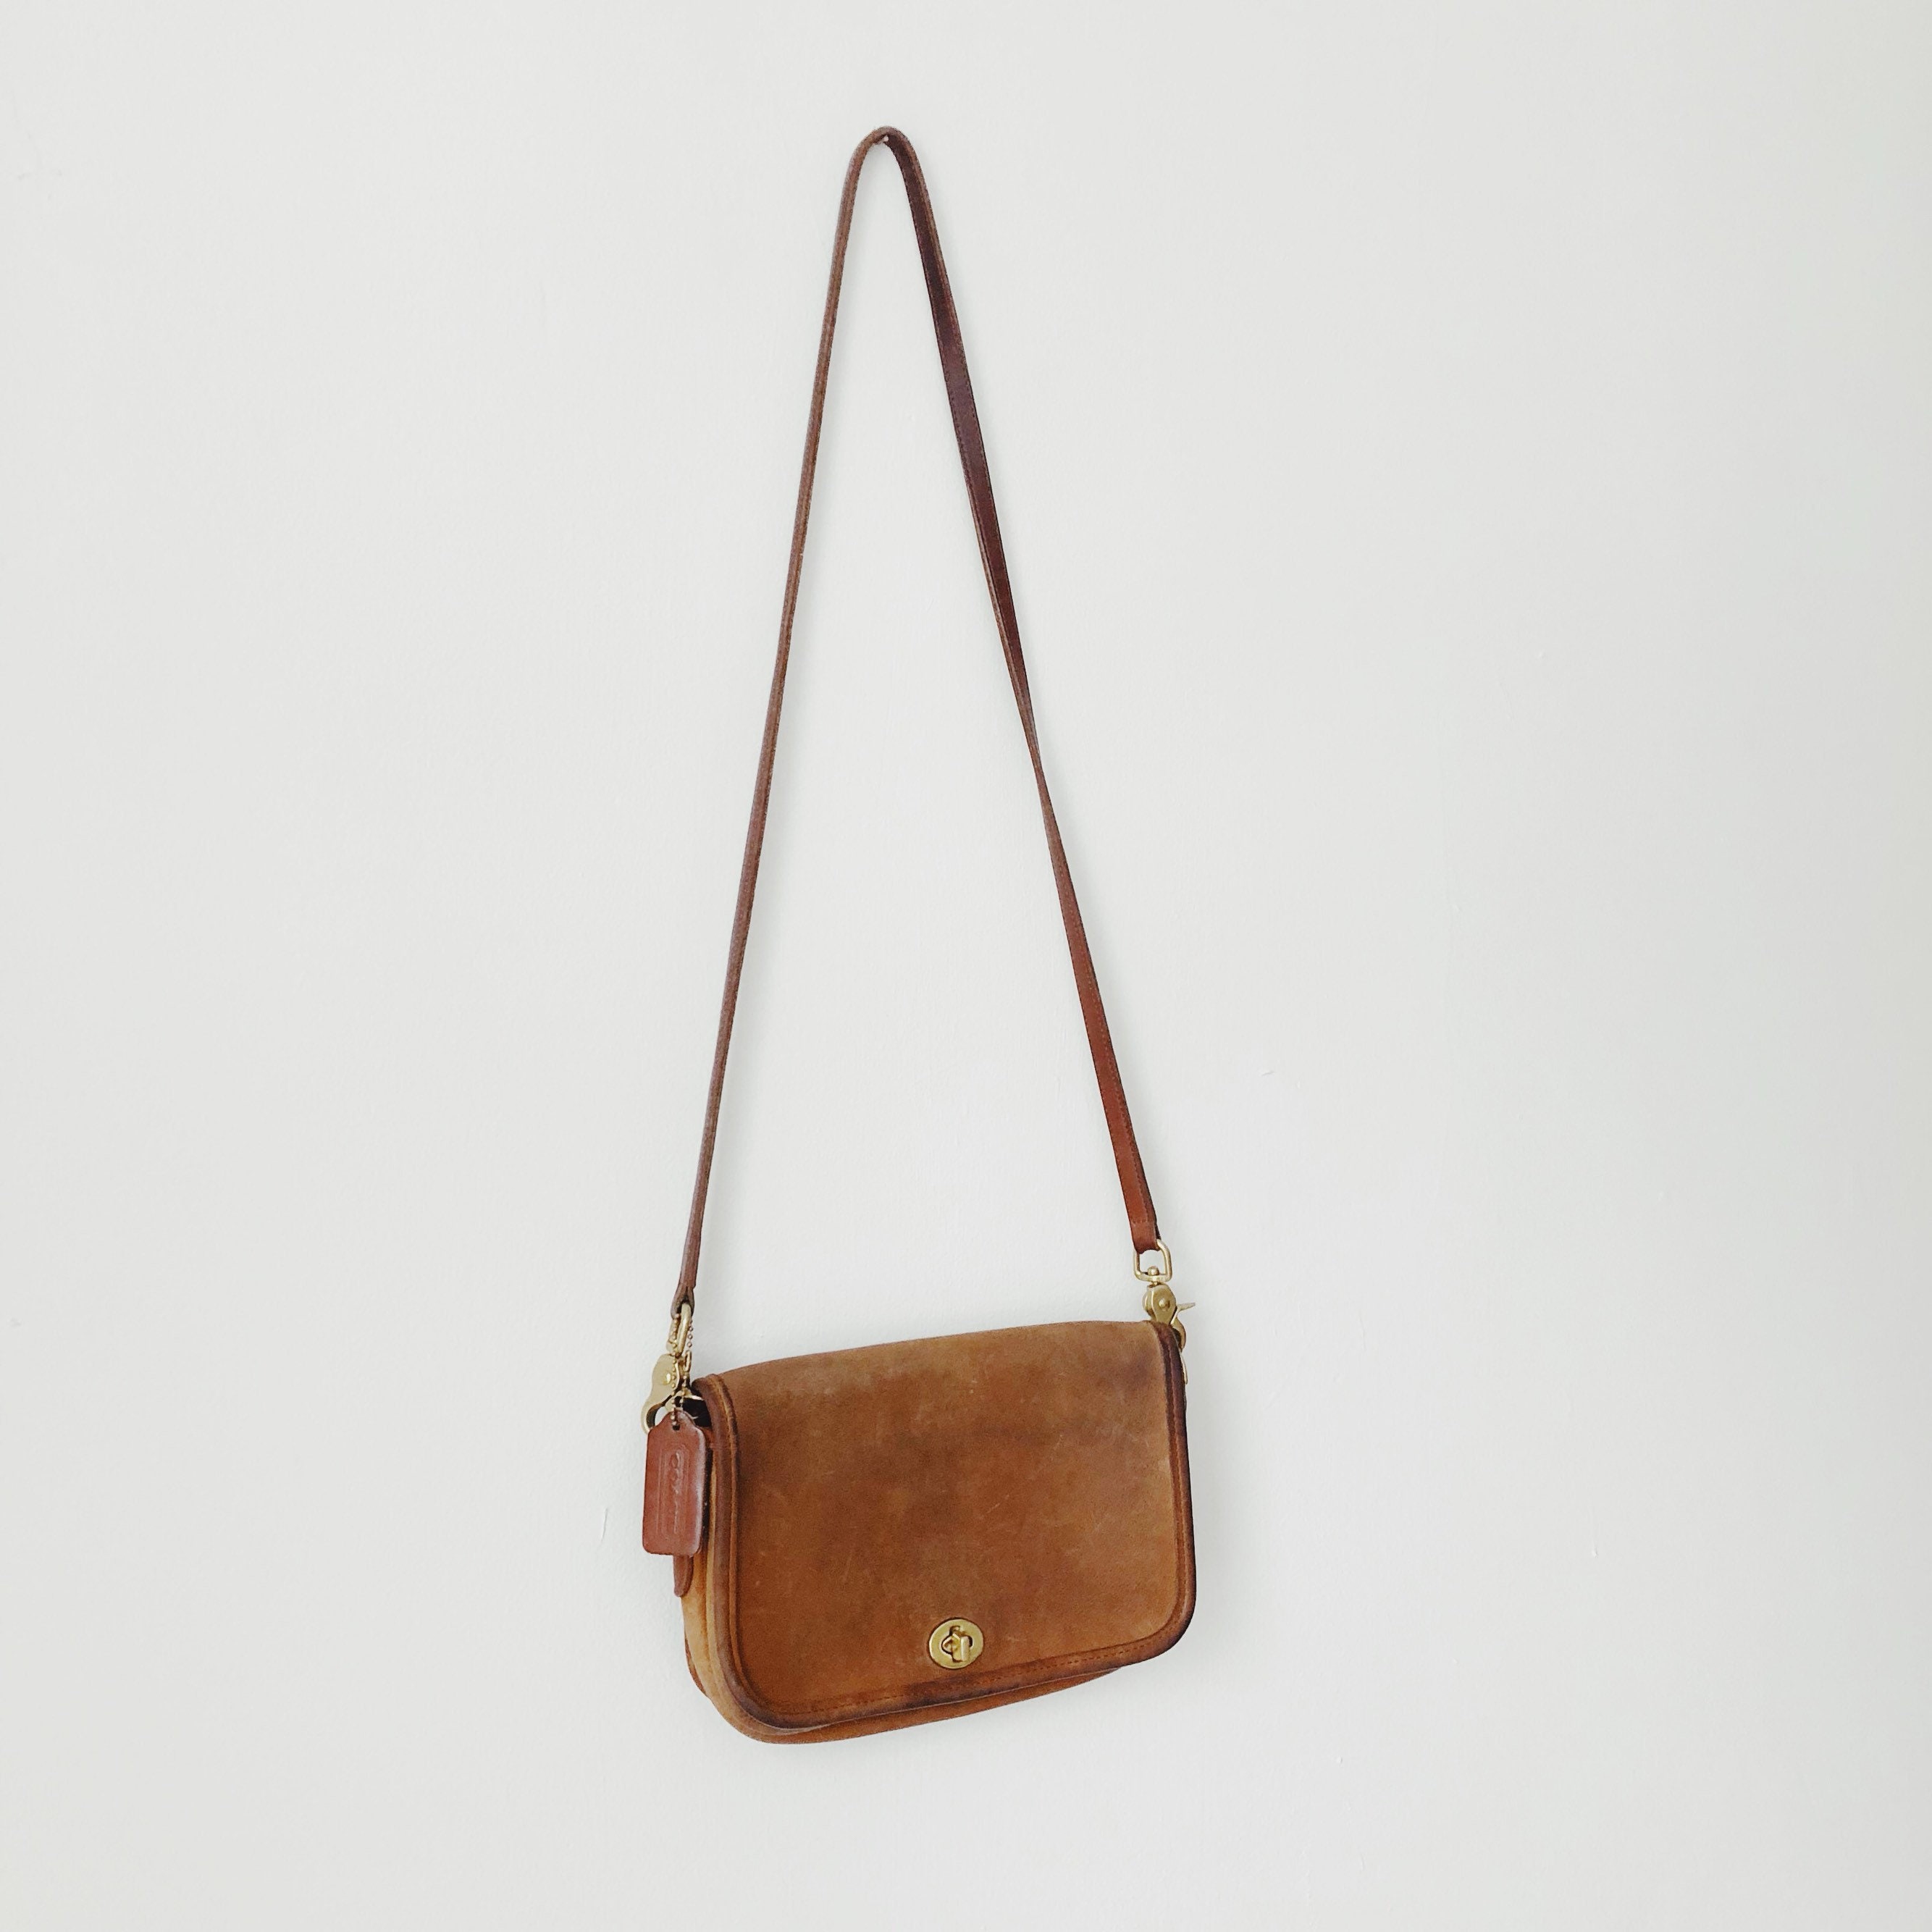 Vintage coach purse